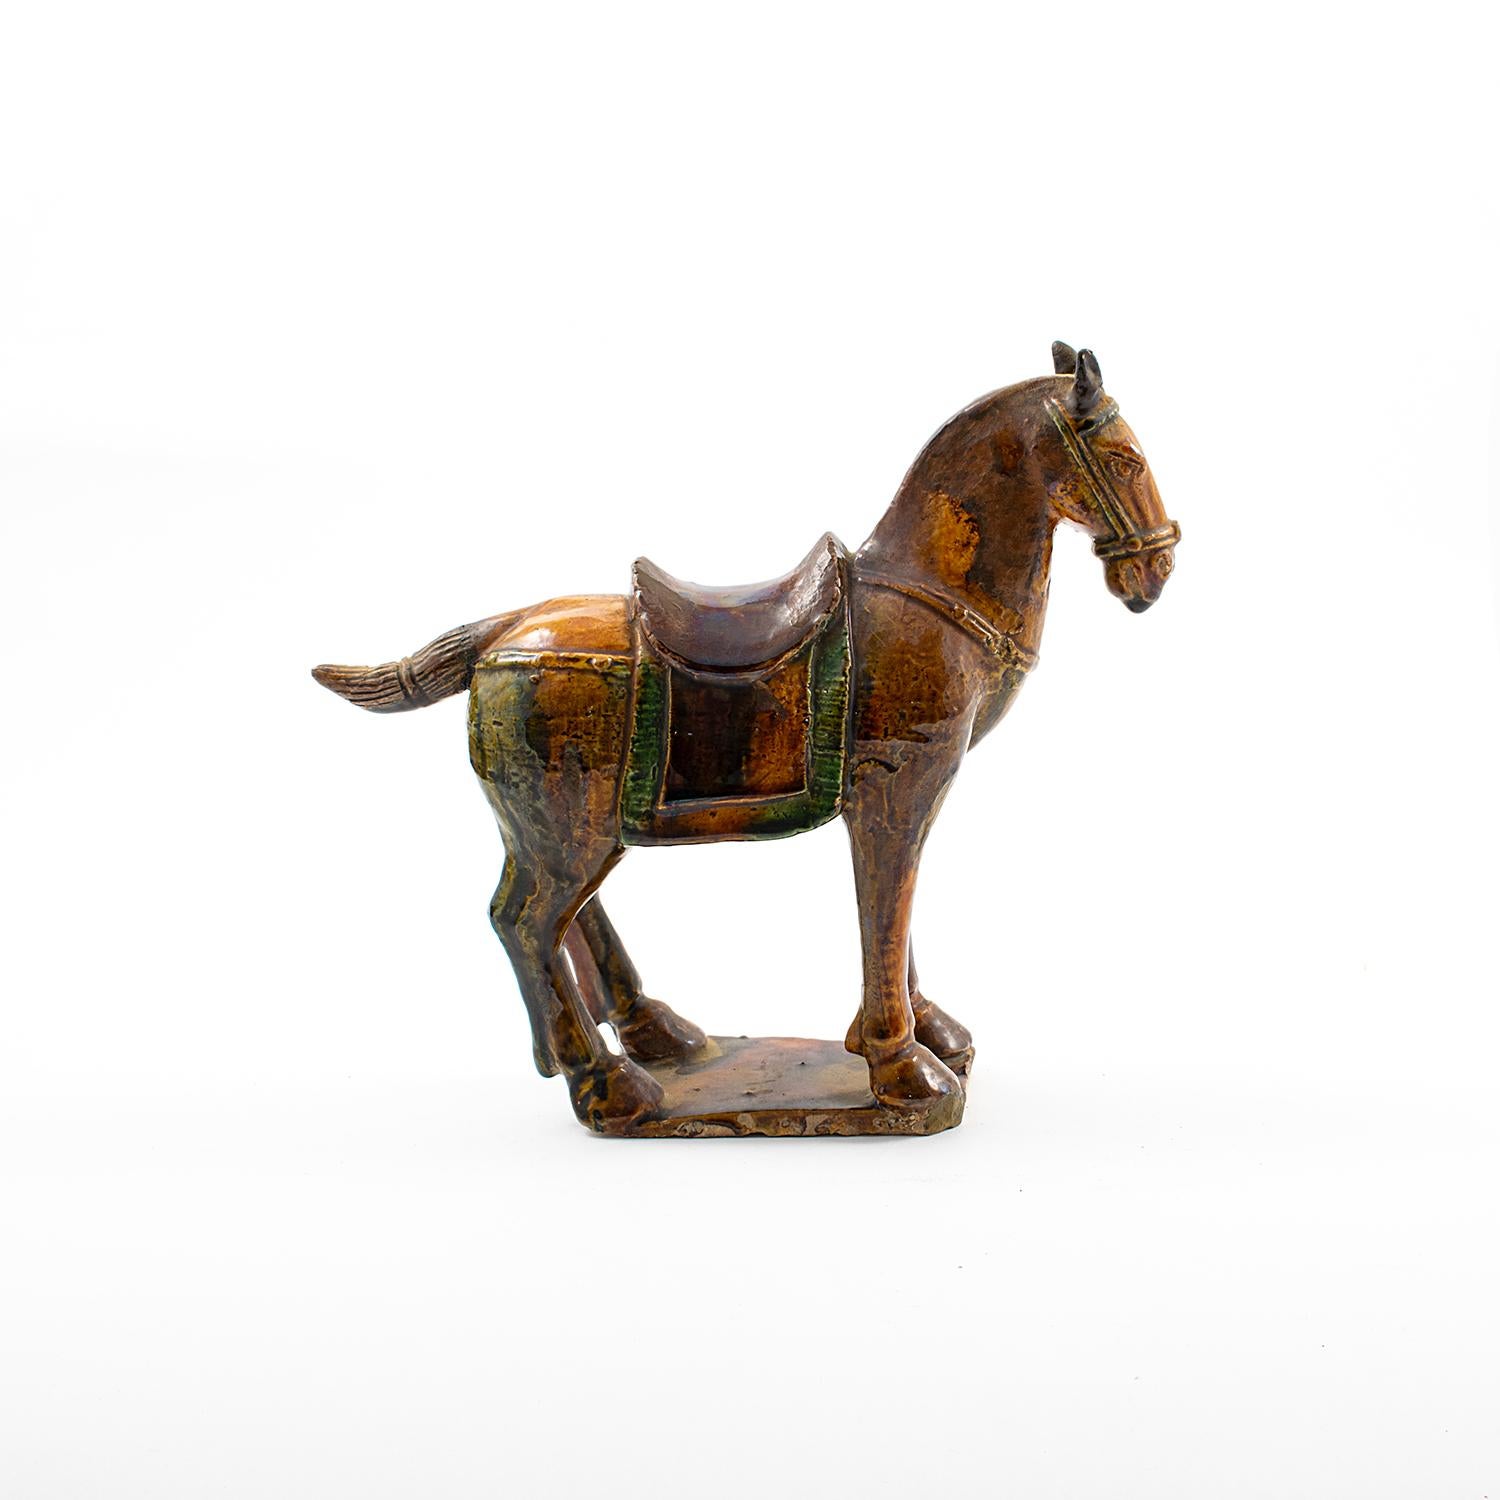 Eine elegante chinesische Keramikfigur aus der Ming-Dynastie, die ein Pferd in stehender Pose darstellt, mit polychromem Finish (aubergine, hellbraun und grün).
Periode der Ming-Dynastie, datiert 1386-1644 n. Chr. Wird mit einem Echtheitszertifikat